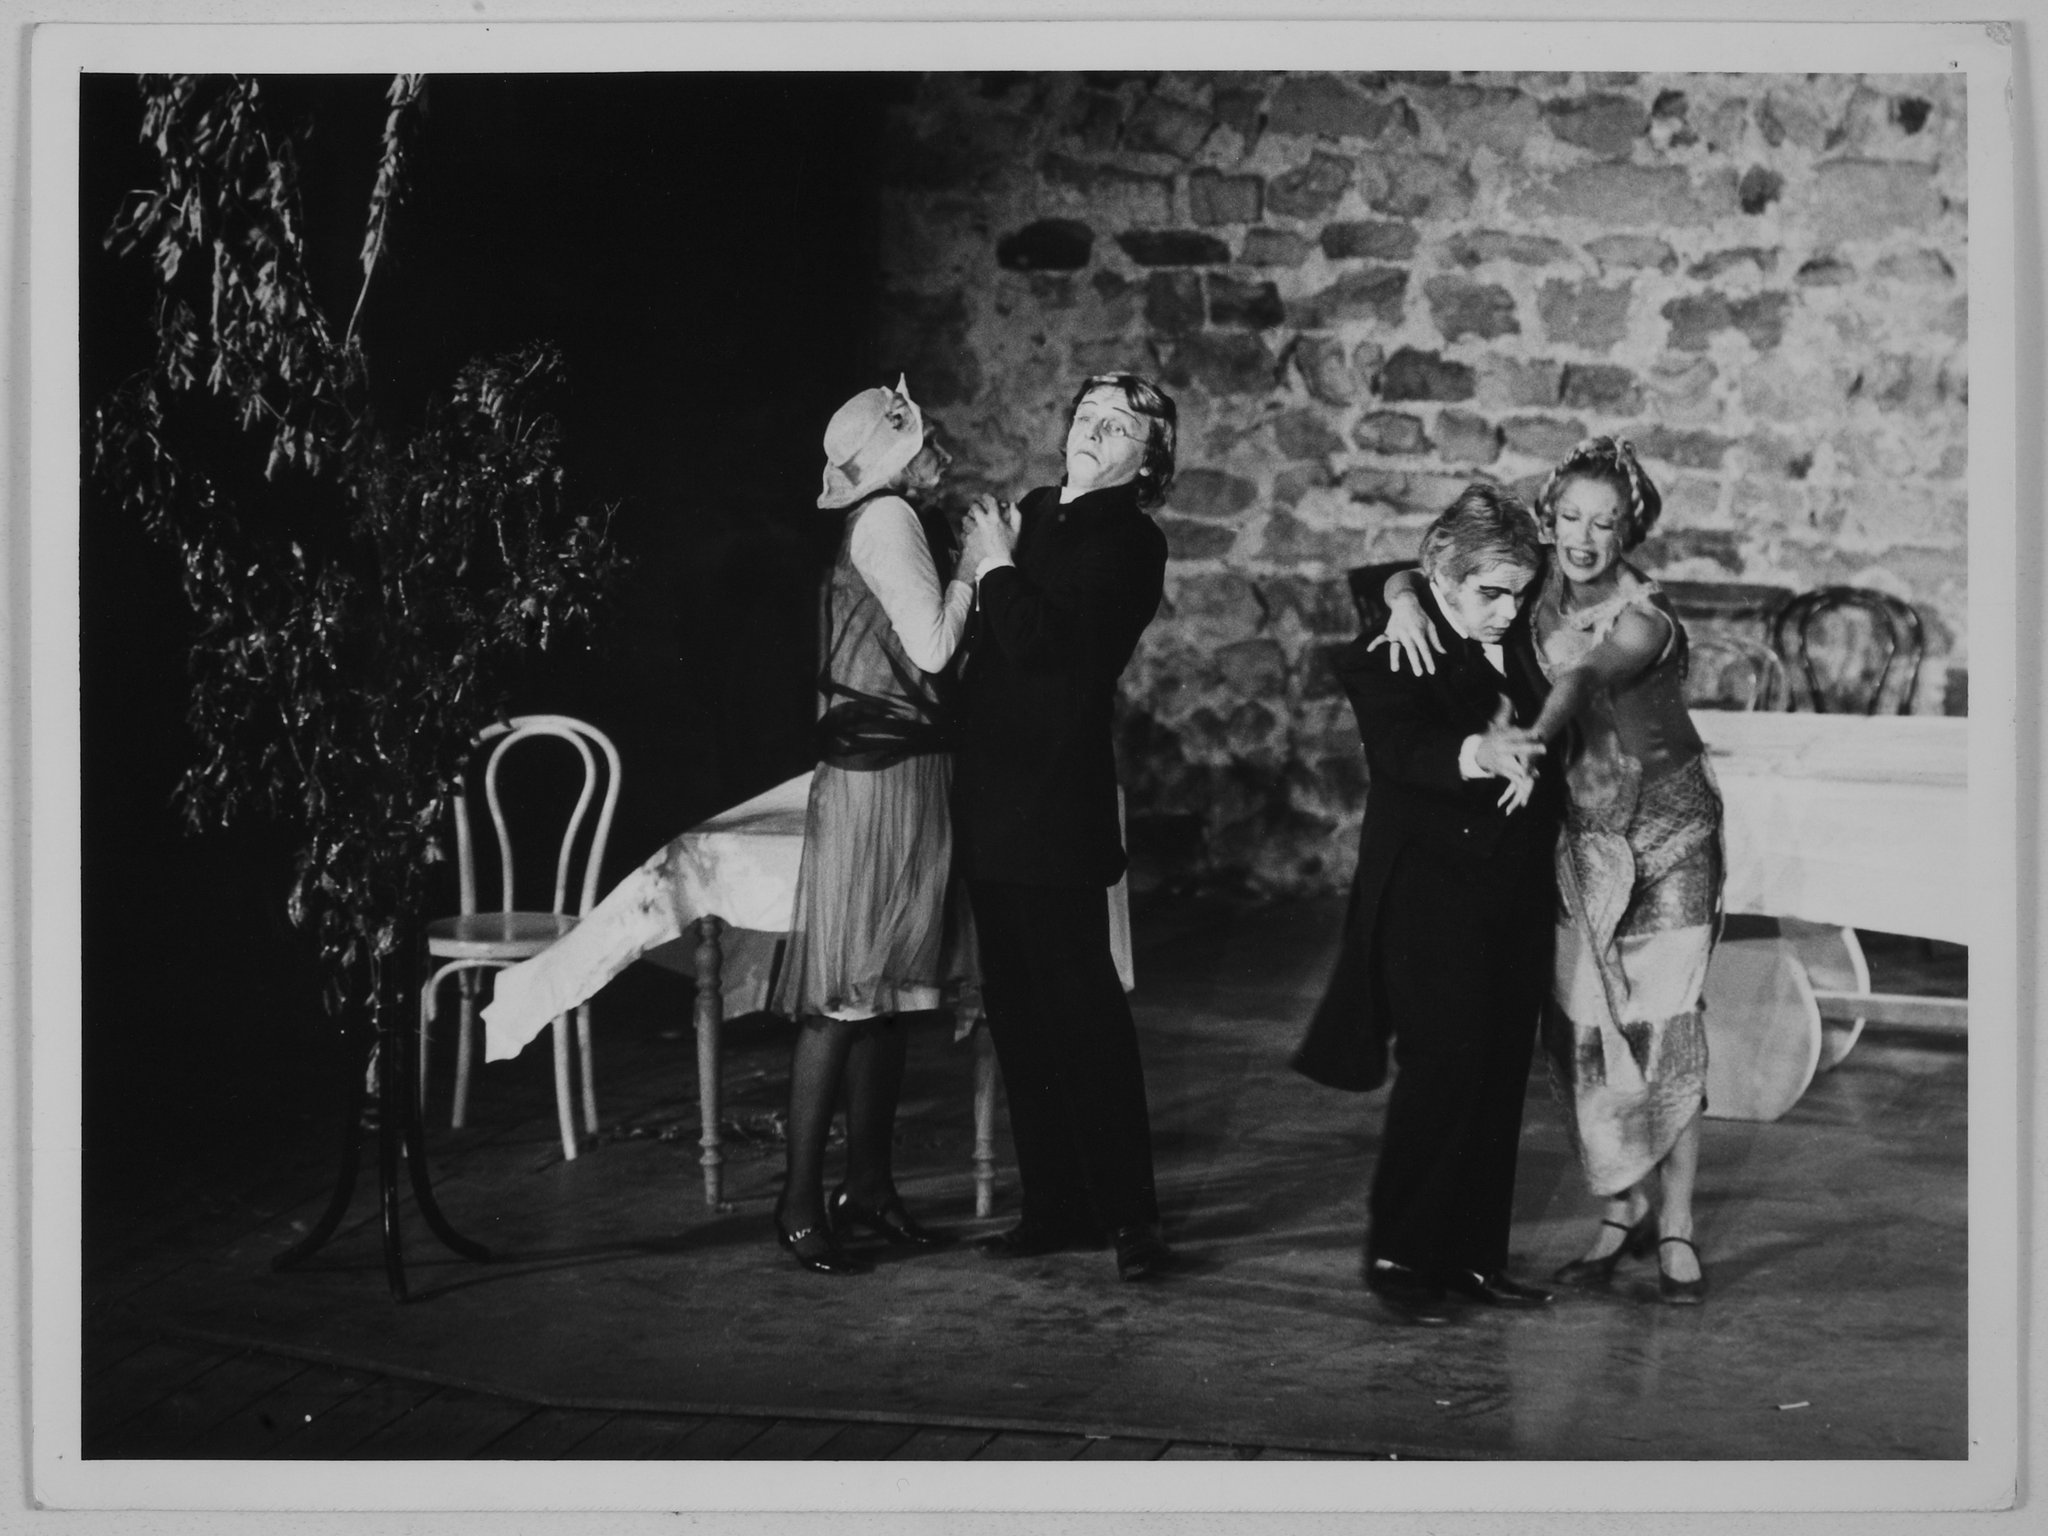 J.BERDIN(LA FEMME DU PASTEUR), J.SOURBIER (LE PASTEUR), Alain CRASSAS (LE JUGE) et Florence GIORGETTI (EVA) dans Maître Puntila et son valet Matti de Bertolt Brecht, mise en scène de Marcel MARECHAL